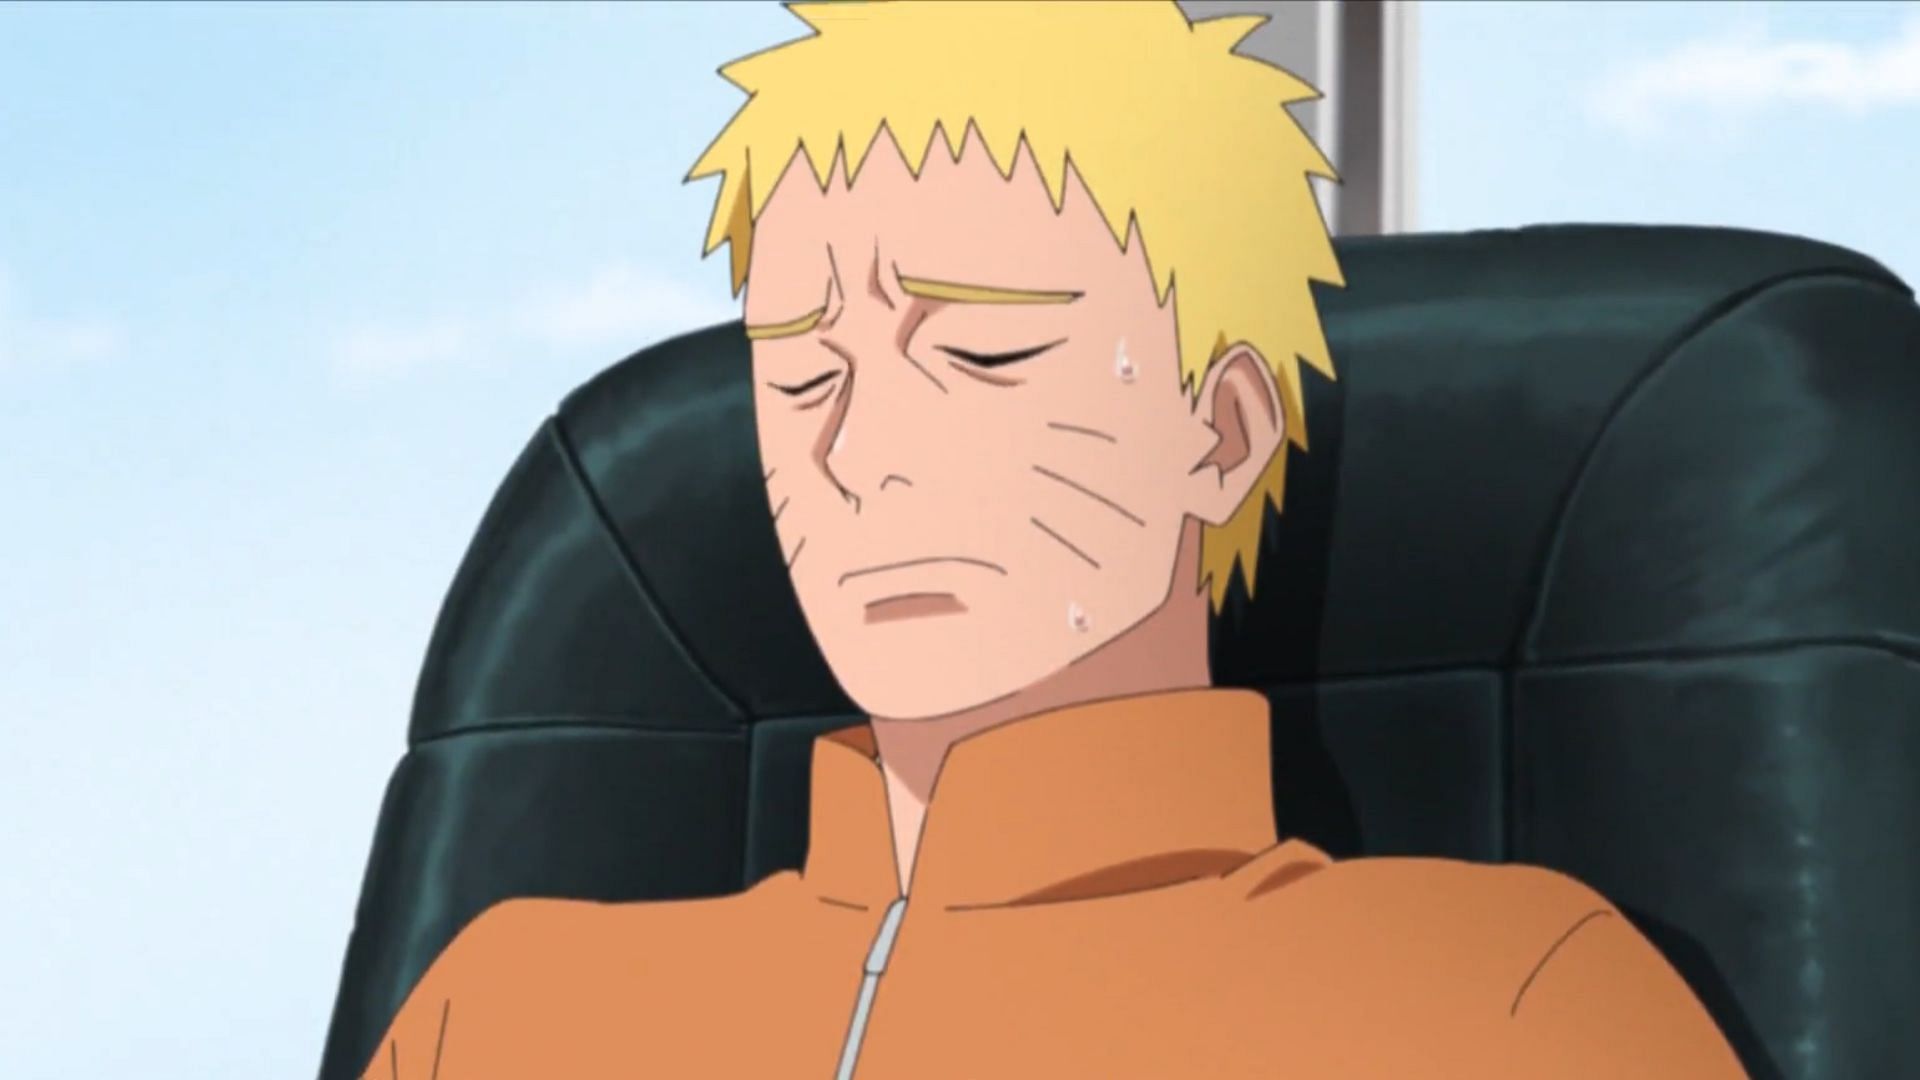 Naruto Uzumaki as seen in Boruto: Naruto Next Generations